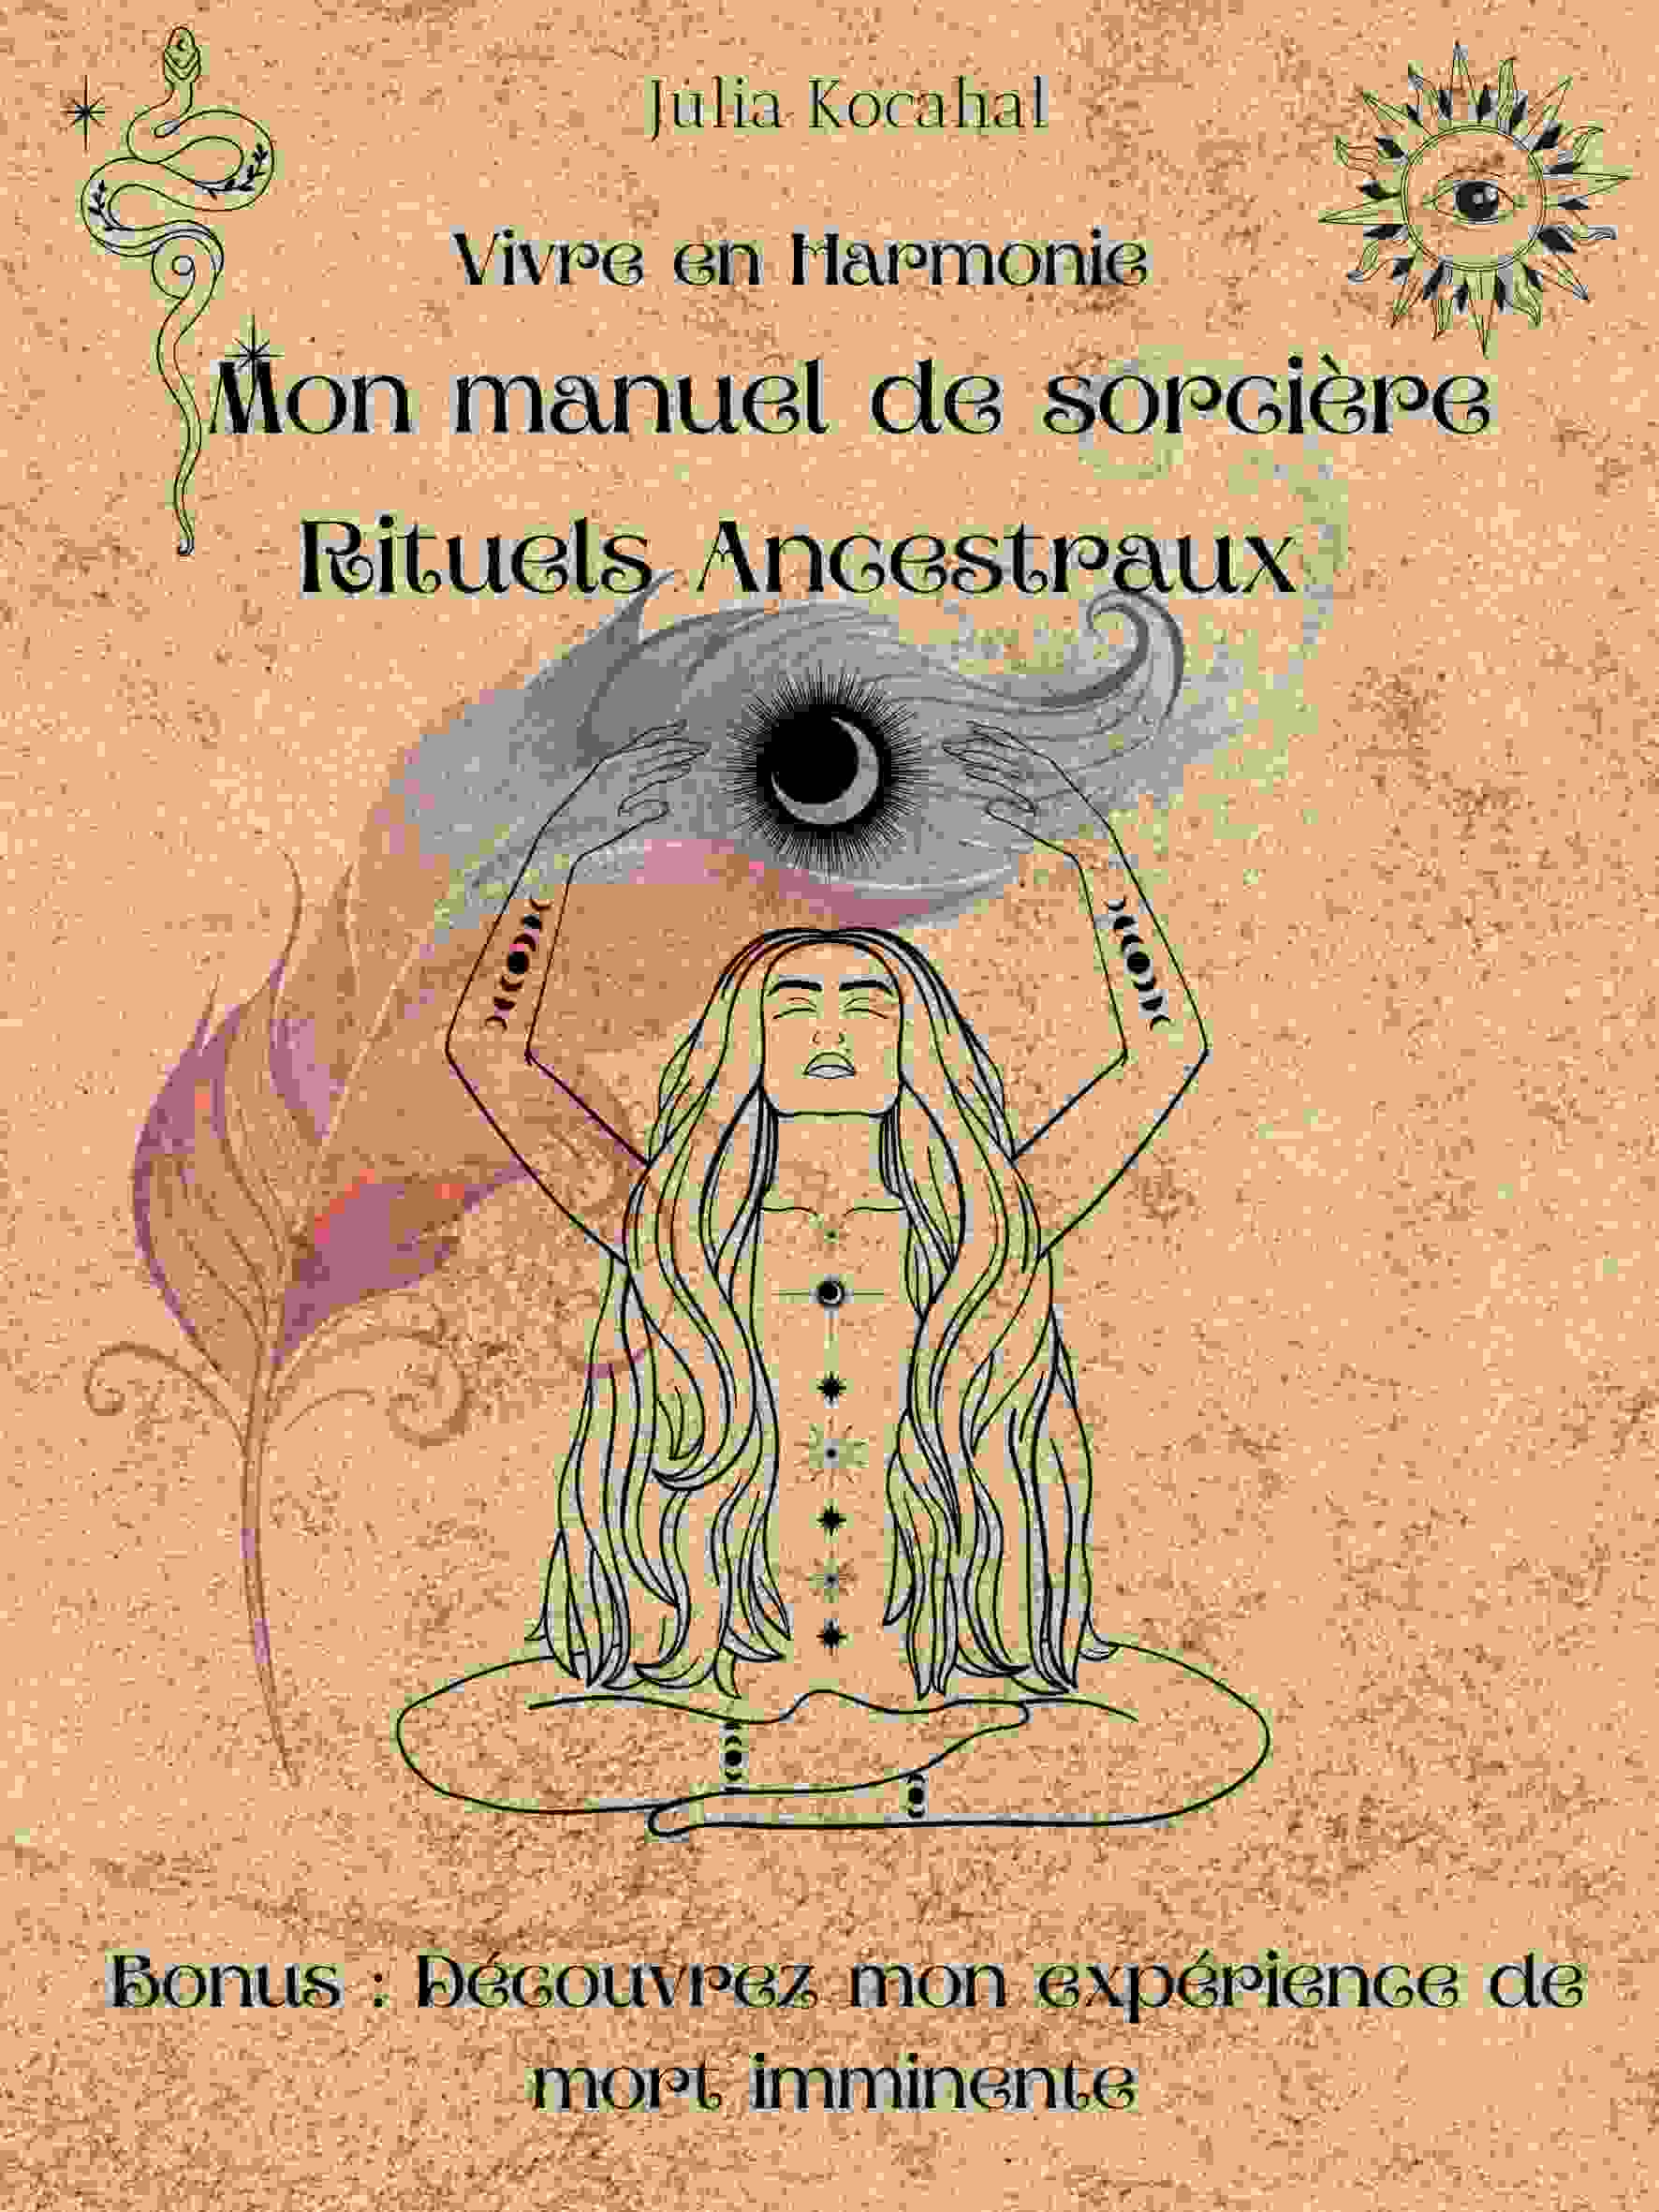 Книга Rituels Ancestraux - Mon manuel de sorcière KOCAHAL